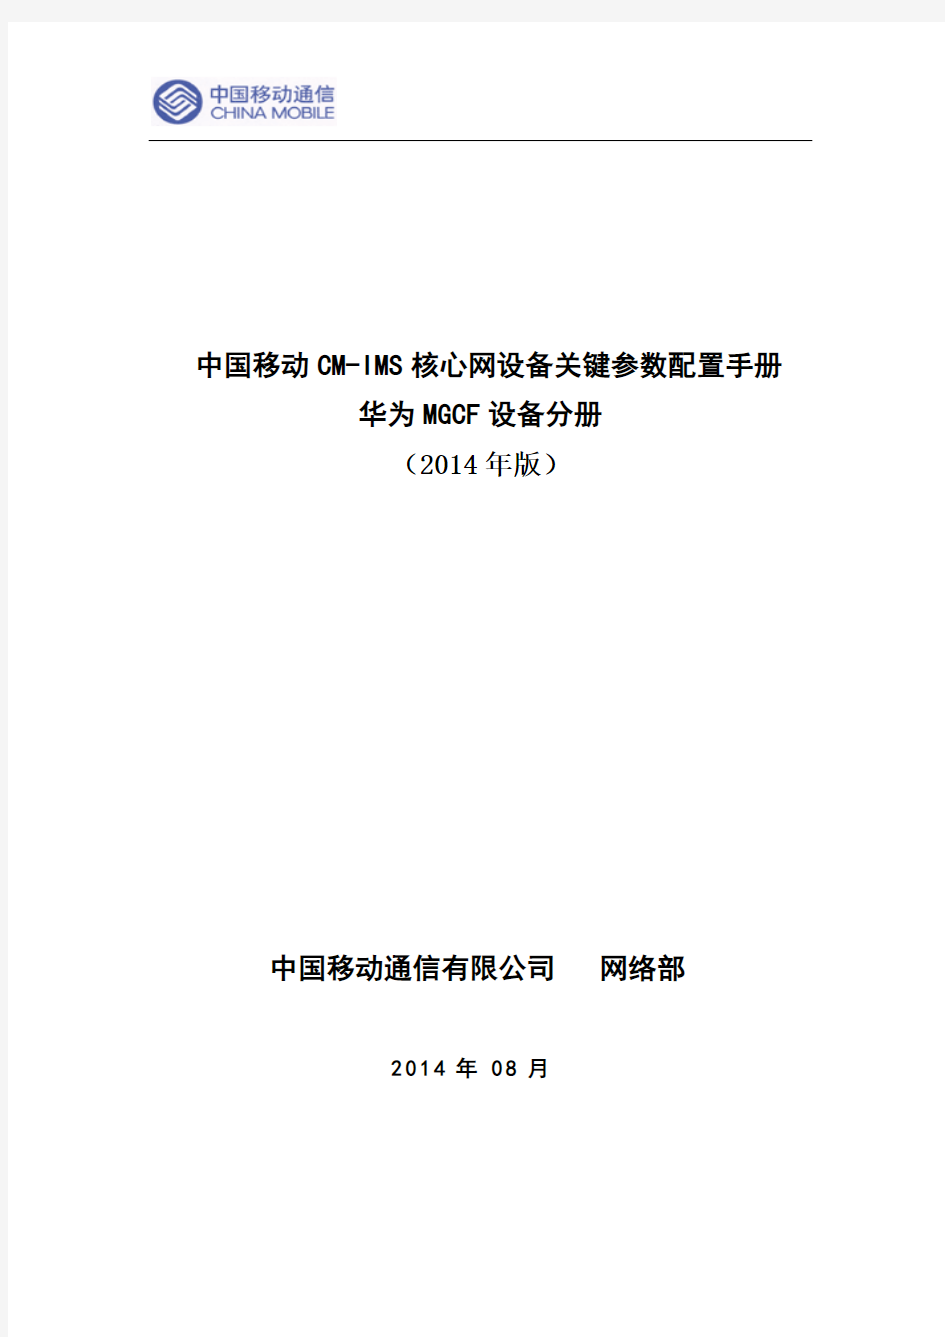 (修订后)中国移动VoLTE核心网通用关键参数配置手册--华为MGCF分册